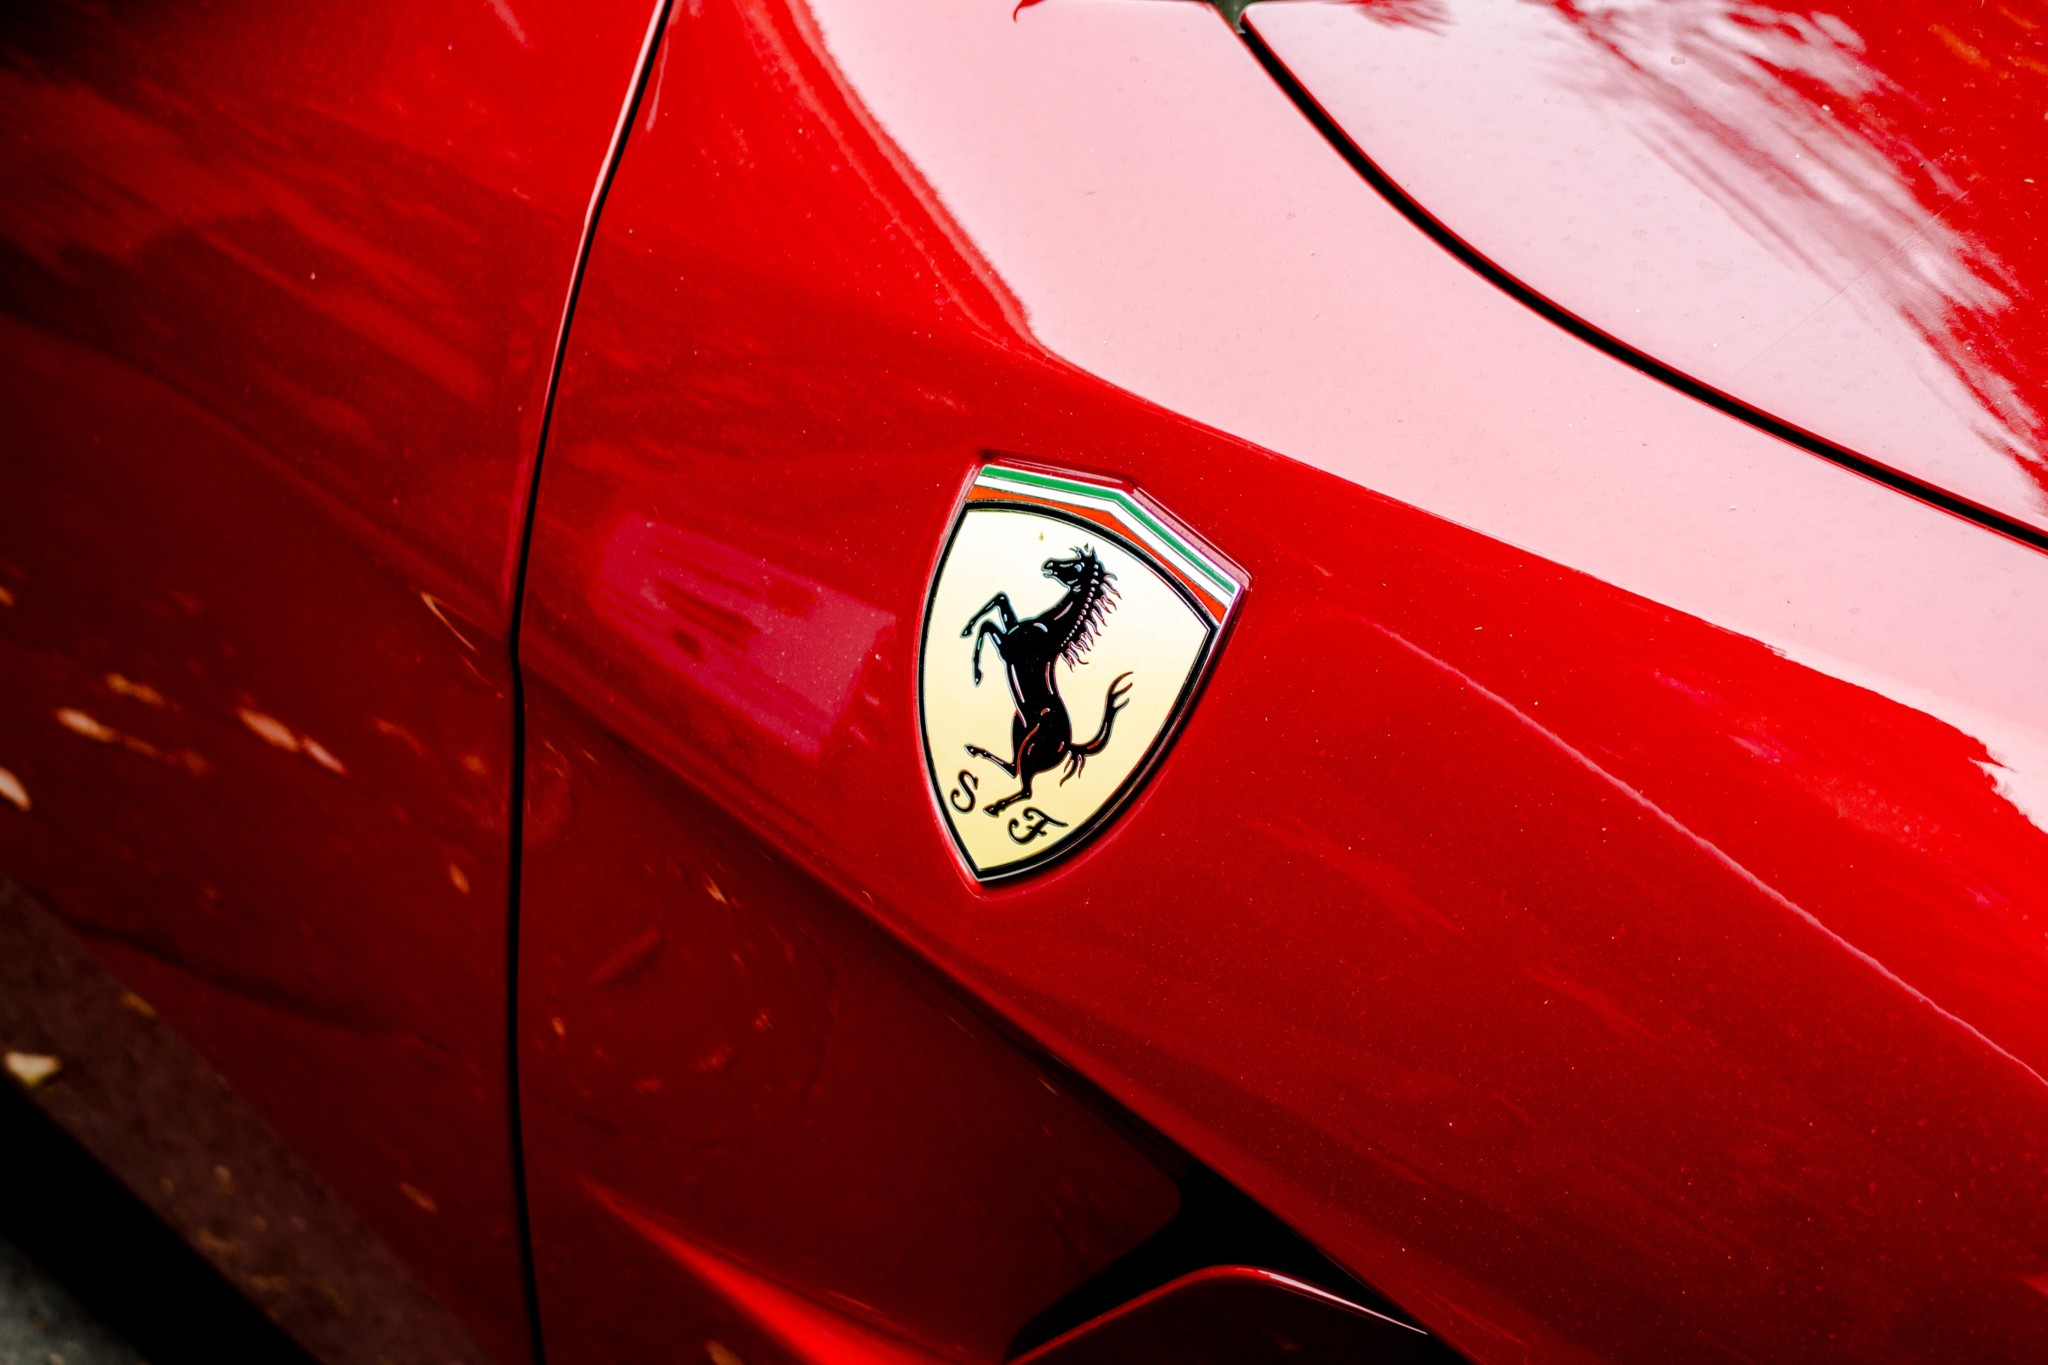 Ferrari marchio più famoso al mondo: titolo decolla in borsa